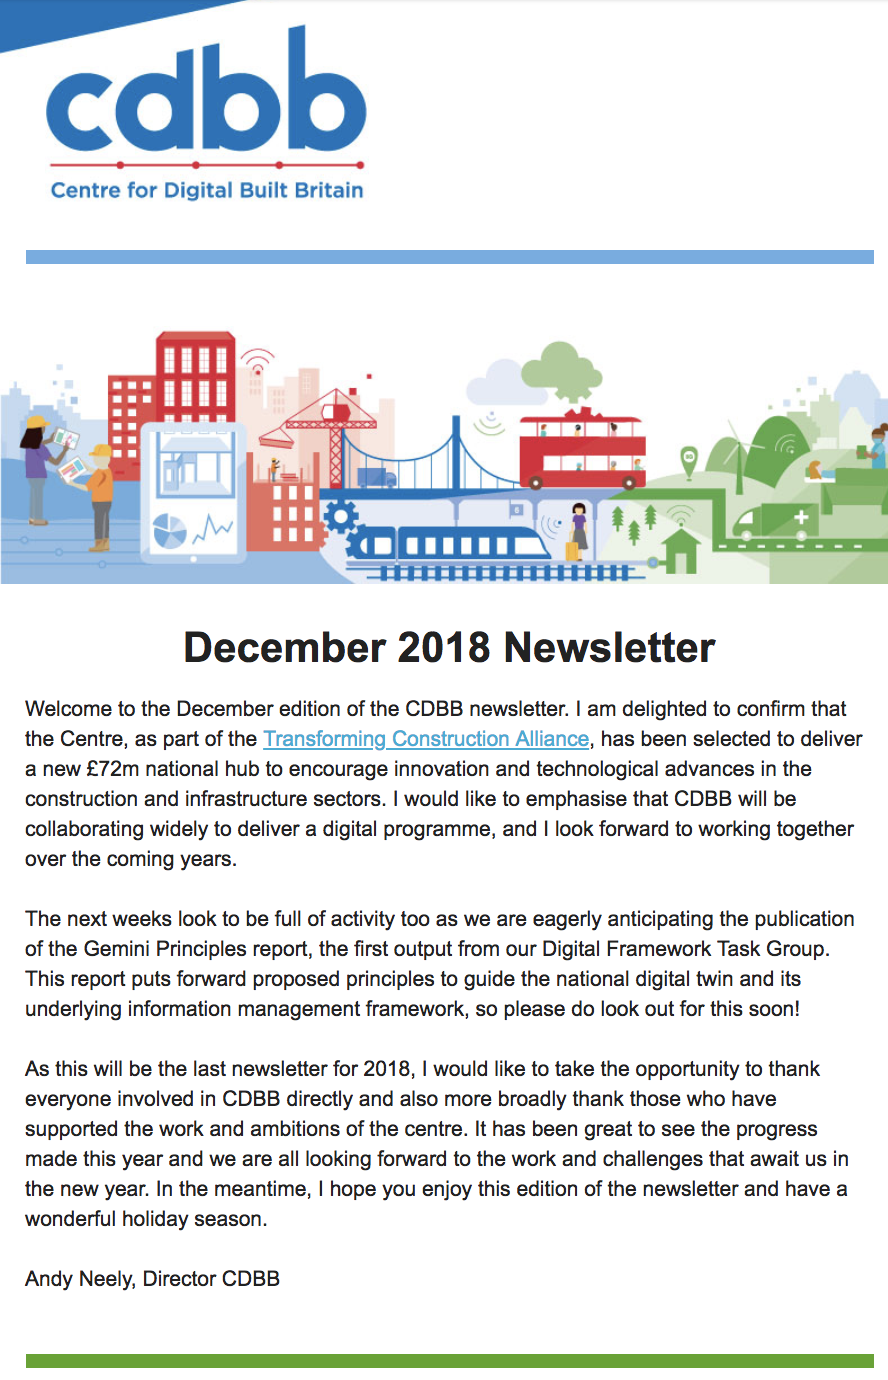 CDBB's December 2018 Newsletter 